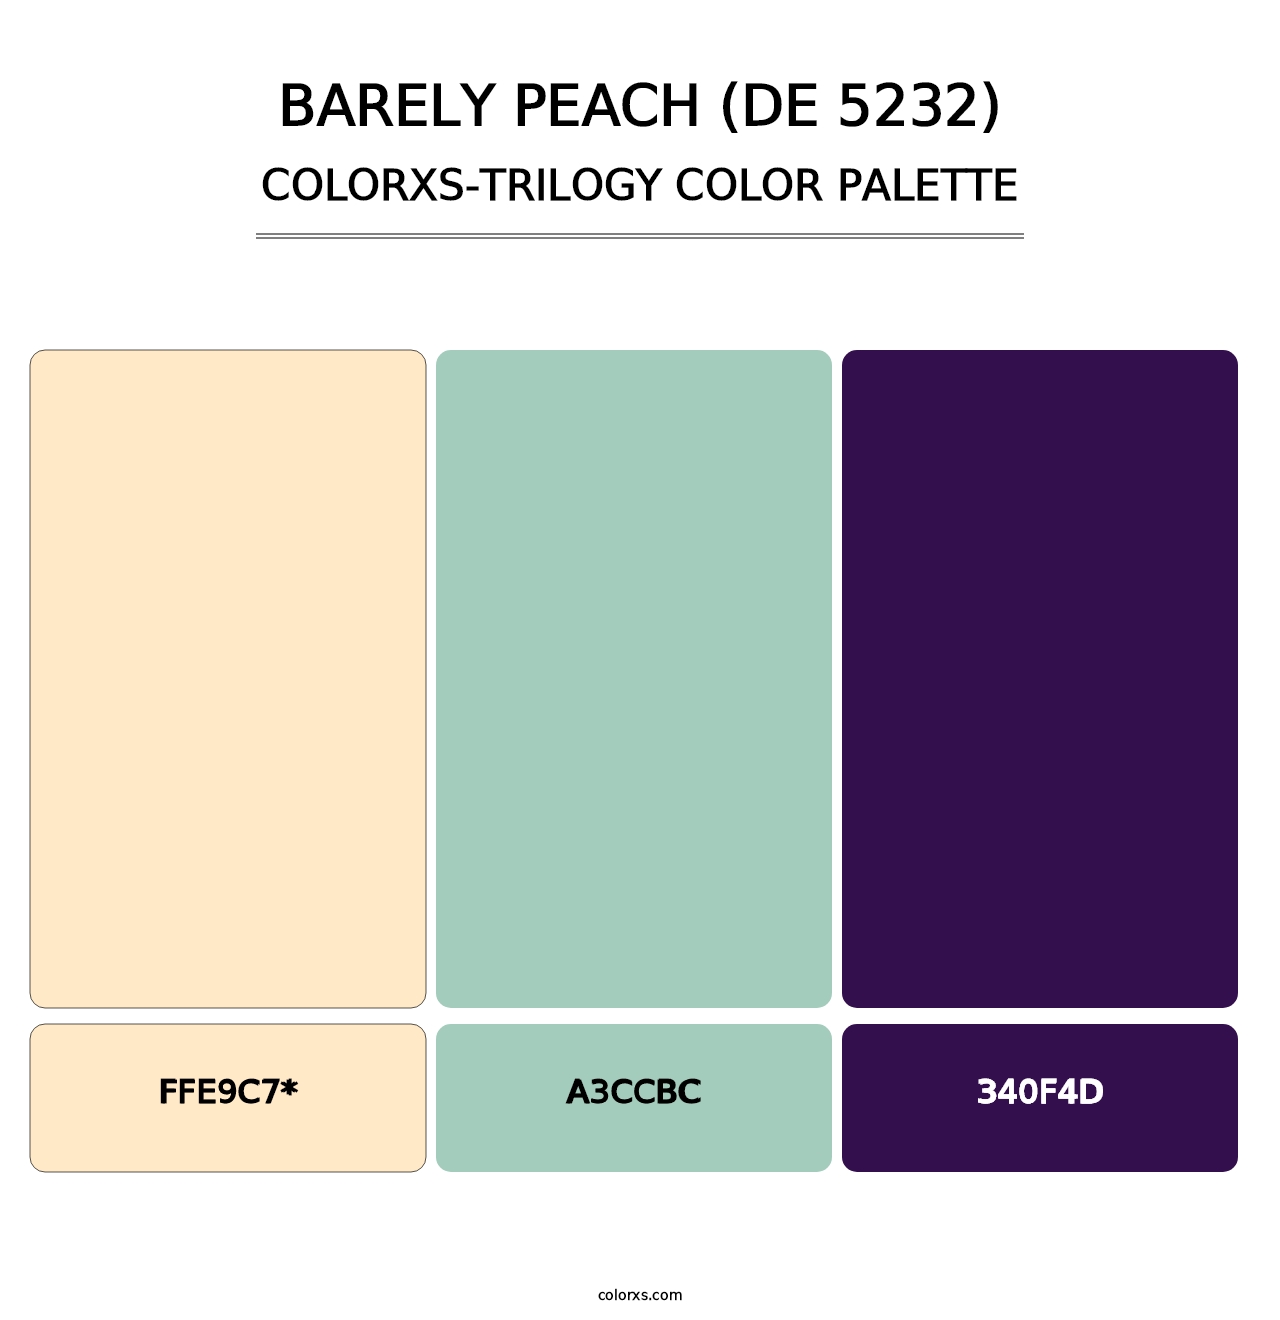 Barely Peach (DE 5232) - Colorxs Trilogy Palette